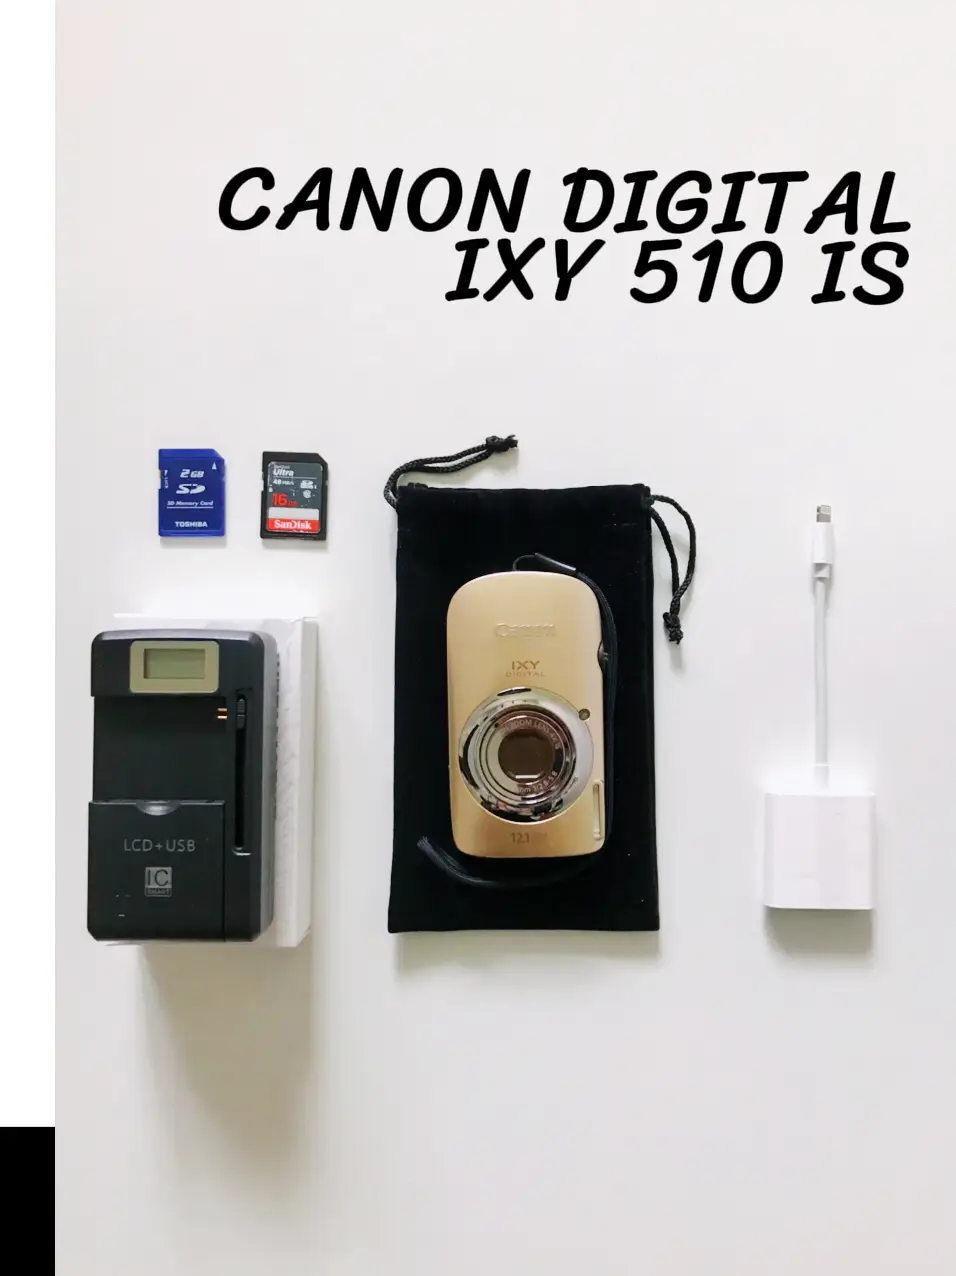 📸Old digital camera 